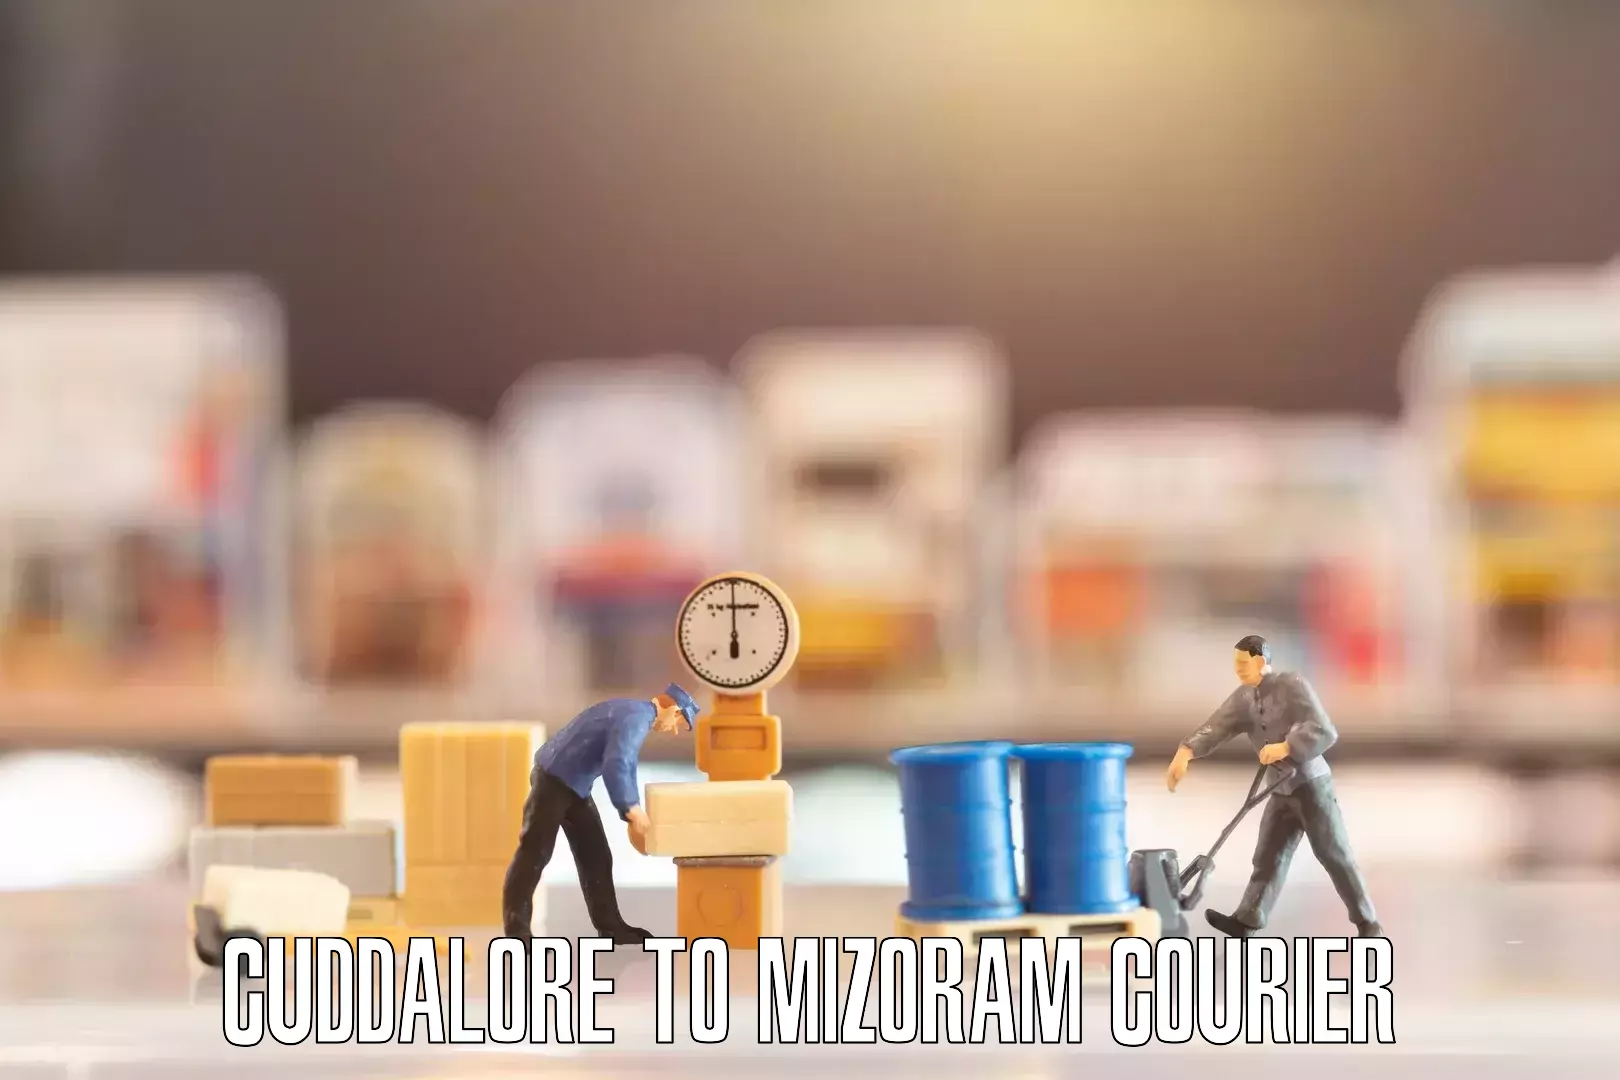 Household moving companies Cuddalore to Mizoram